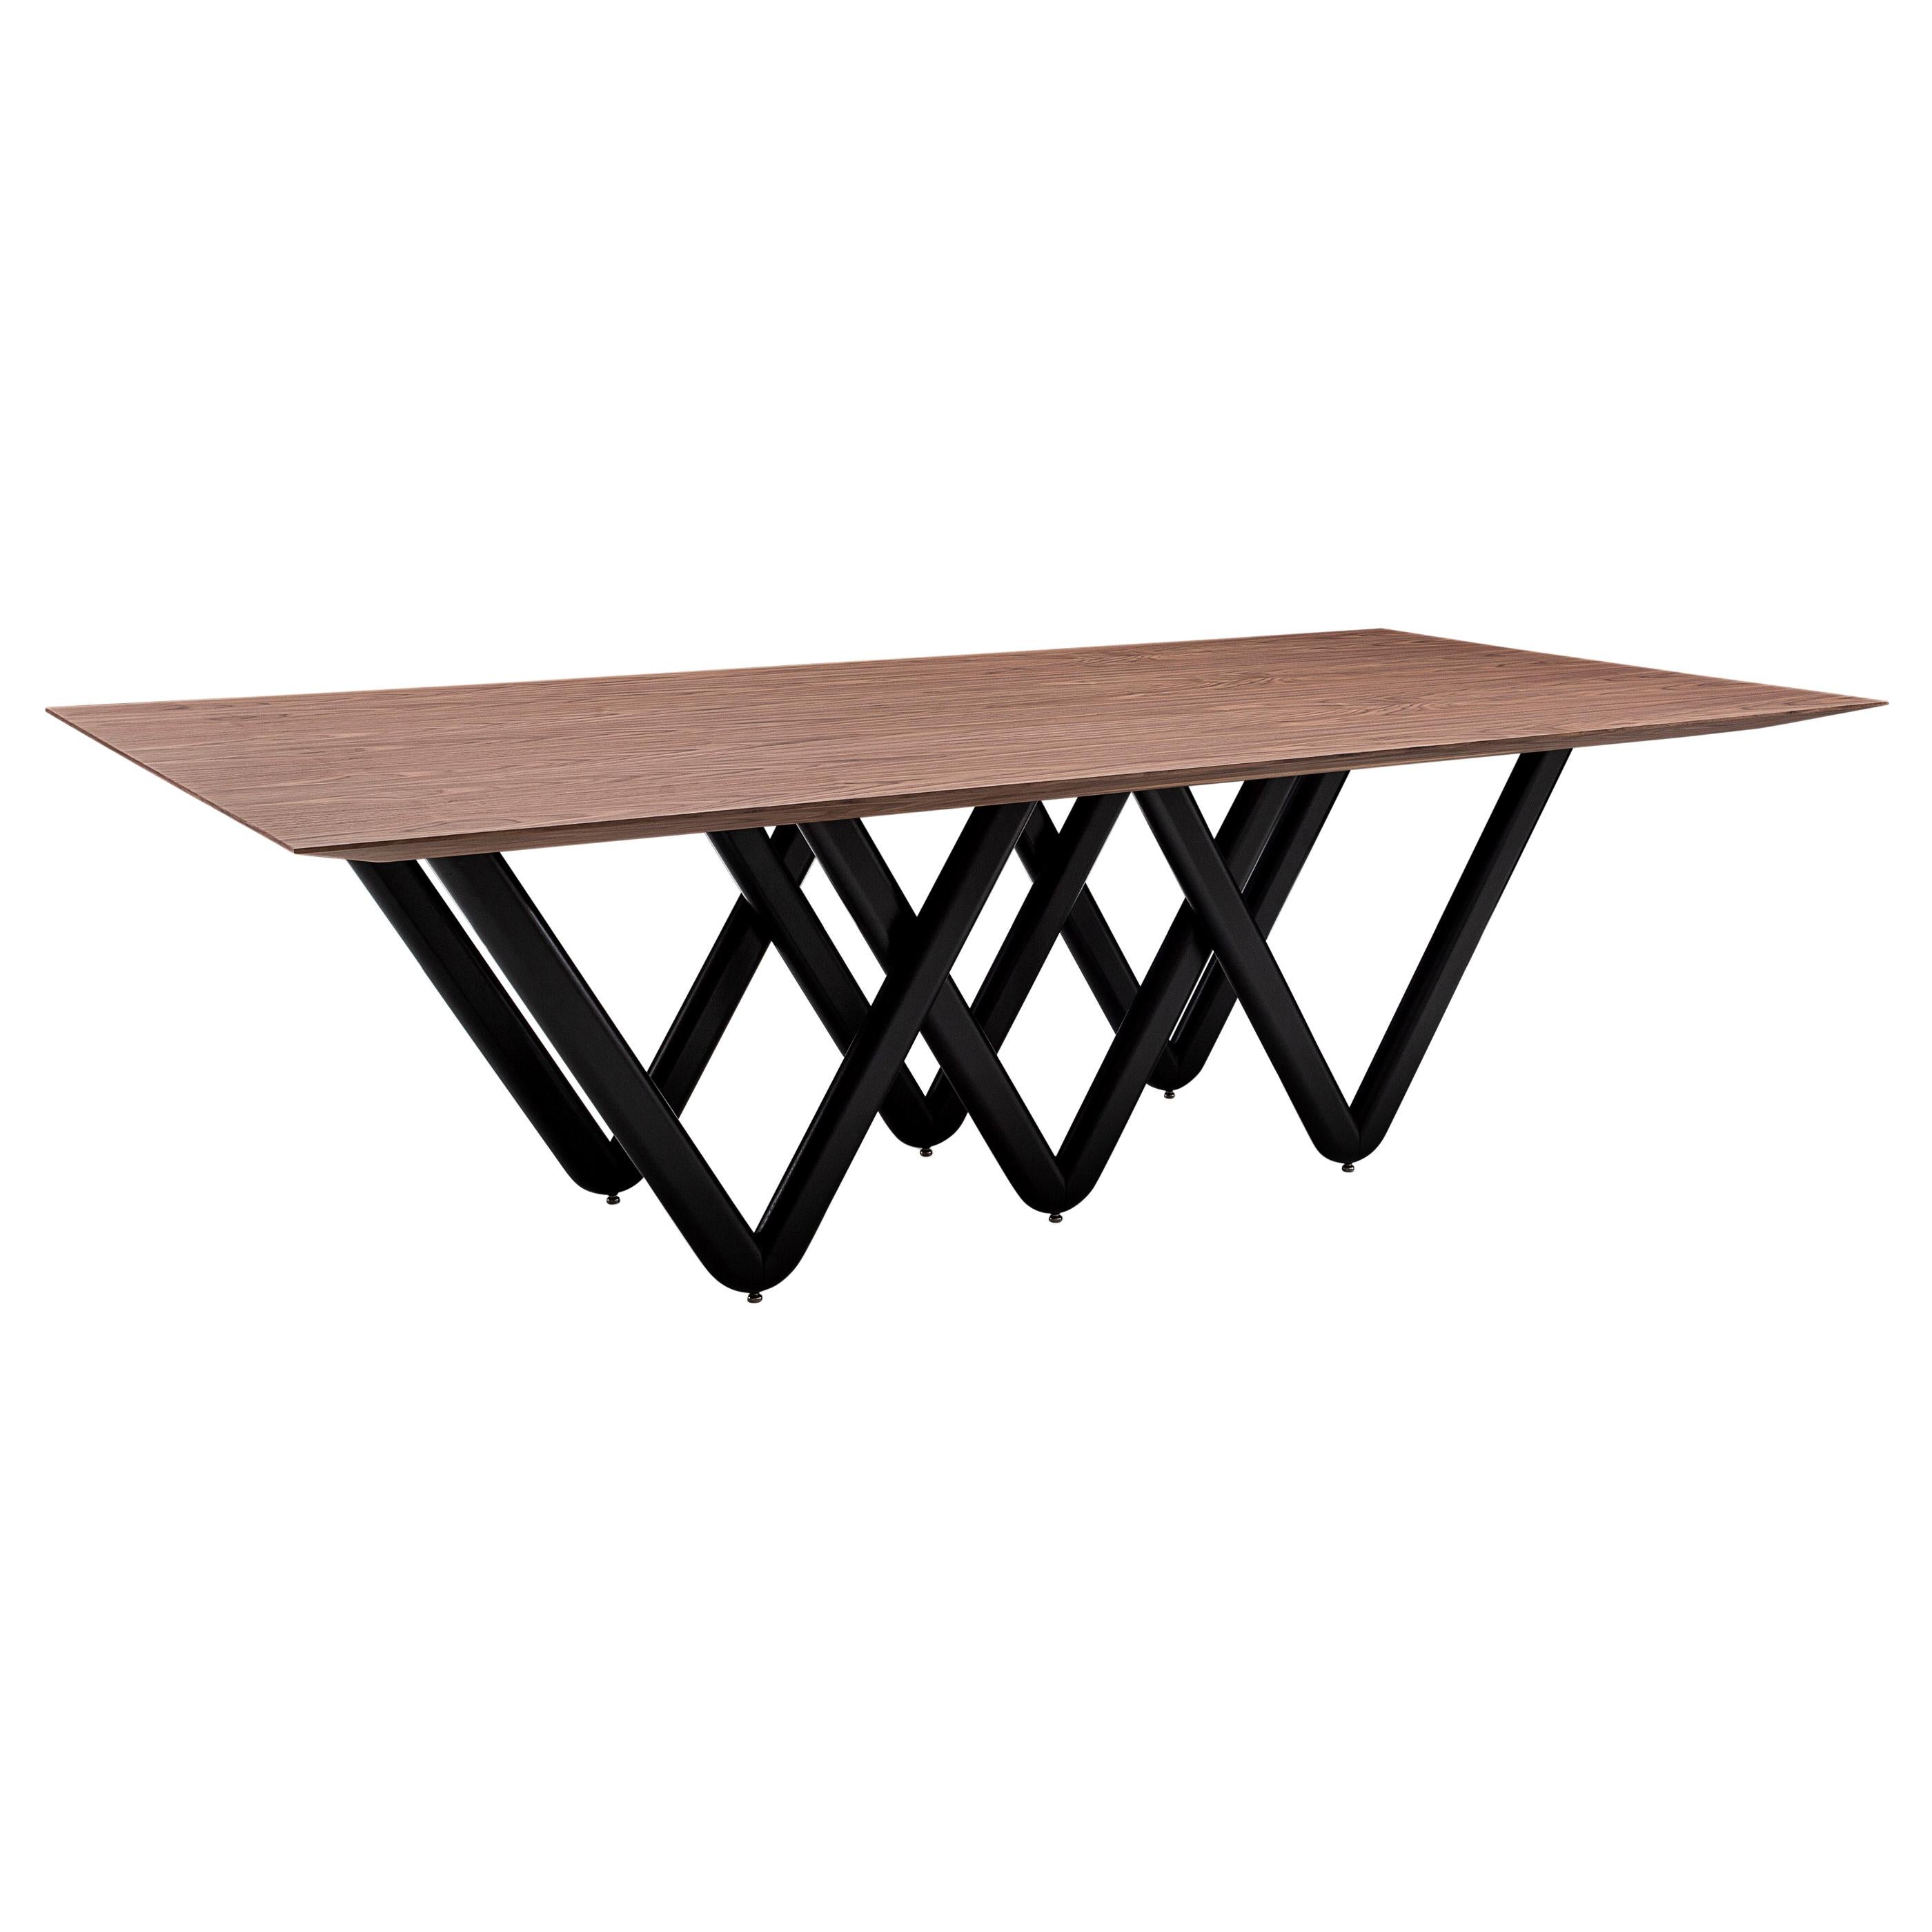 La table de salle à manger Dablio se caractérise par une base en forme de V entrecroisé, peinte en noir, qui est mise en valeur par un superbe plateau en placage de noyer. Elle a une structure très singulière et originale et en même temps, c'est une